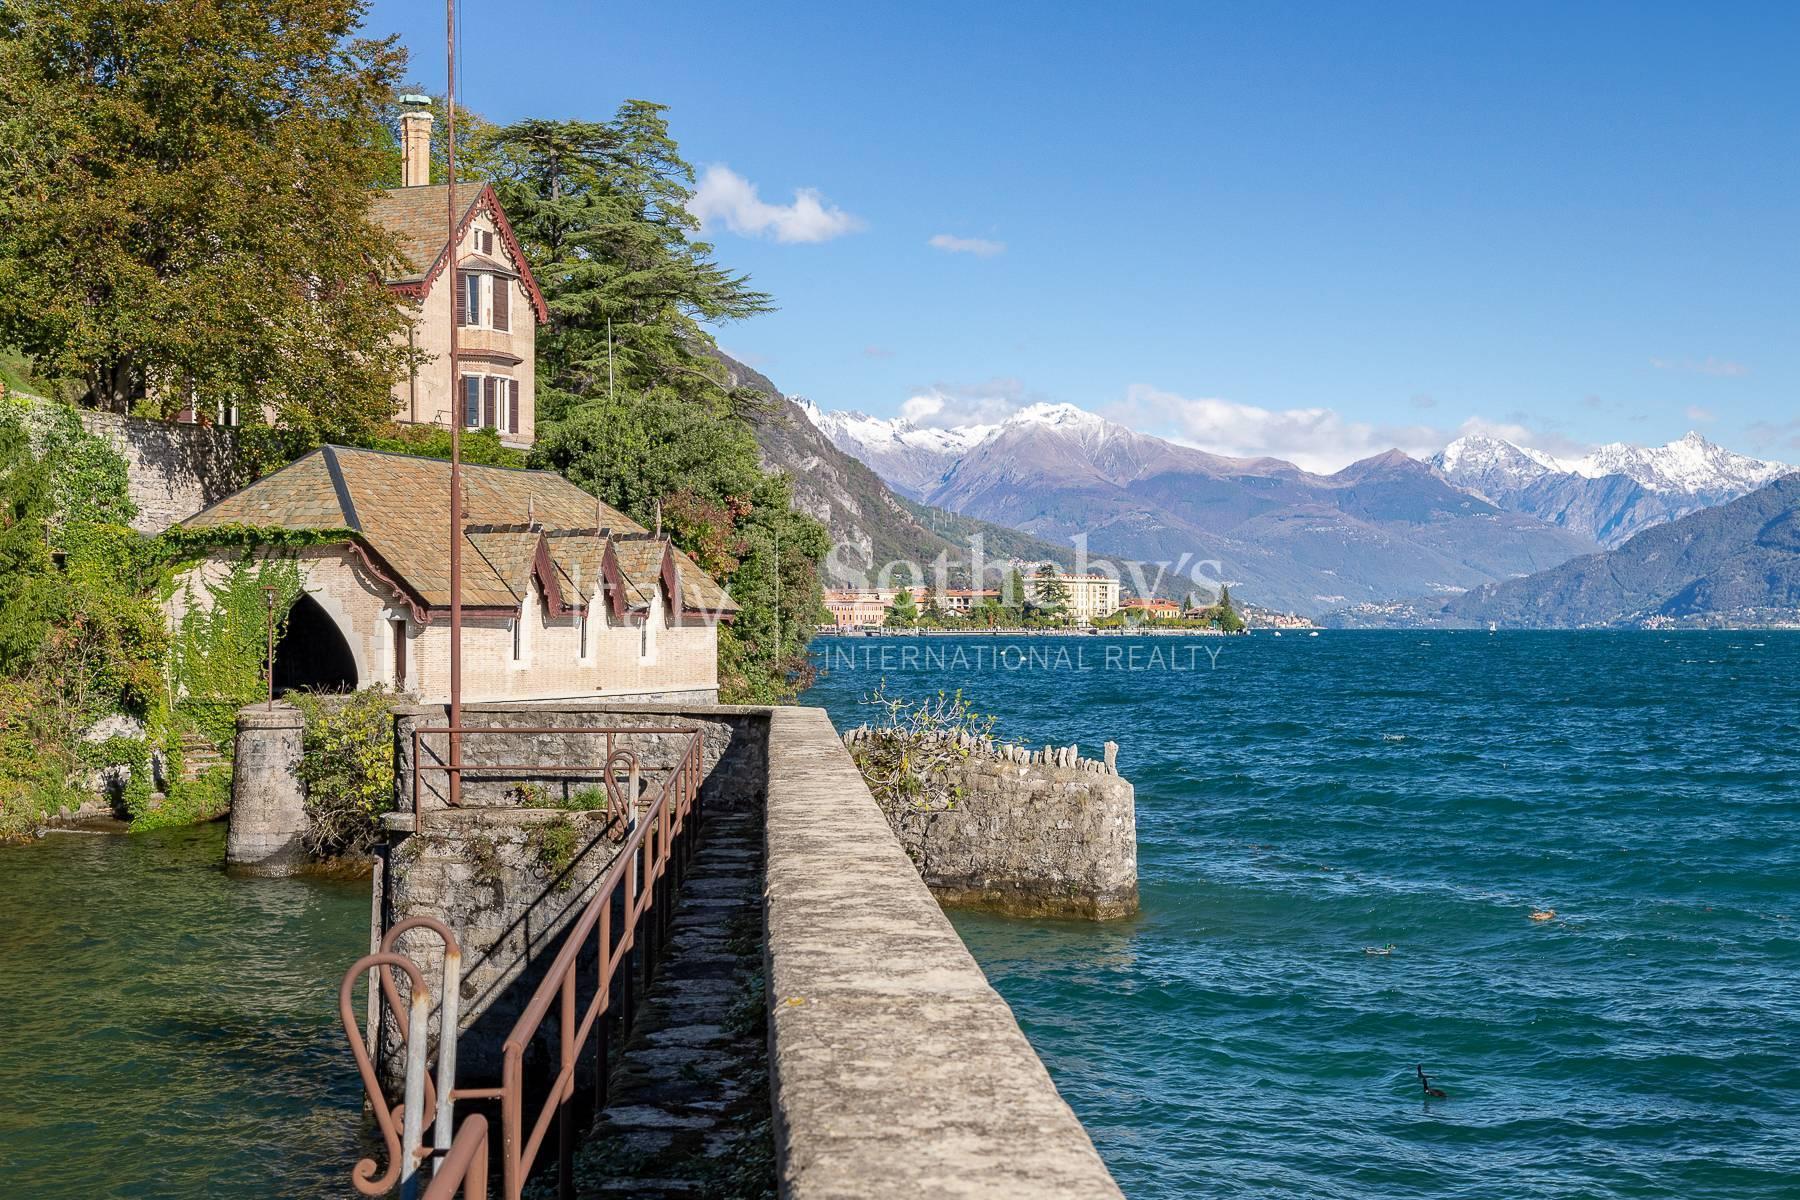 Magnifica villa in stile vittoriano sul lago di Como - 4